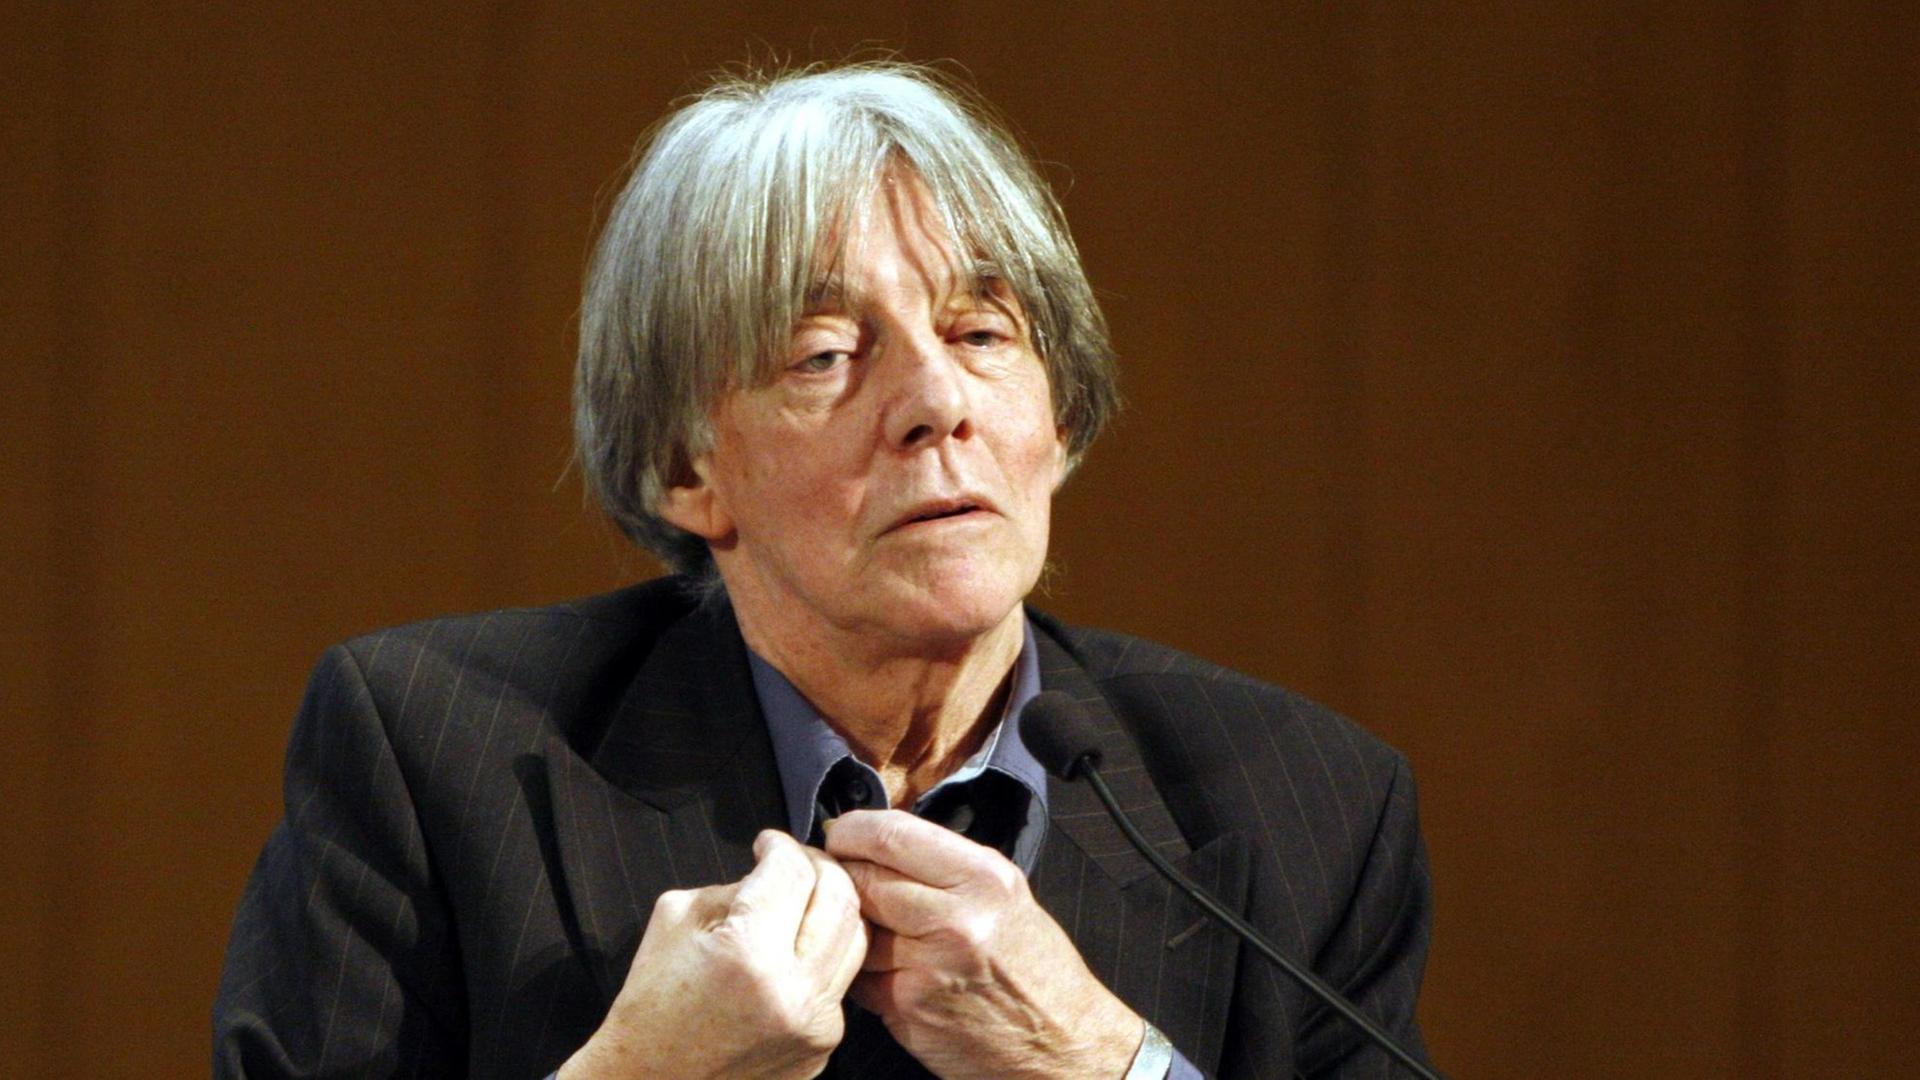 Der französische Schriftsteller und Philosoph André Glucksmann, aufgenommen am 08.01.2008 bei einer Rede zur Eröffnung des Dahlem Humanties Center der Freien Universität Berlin.